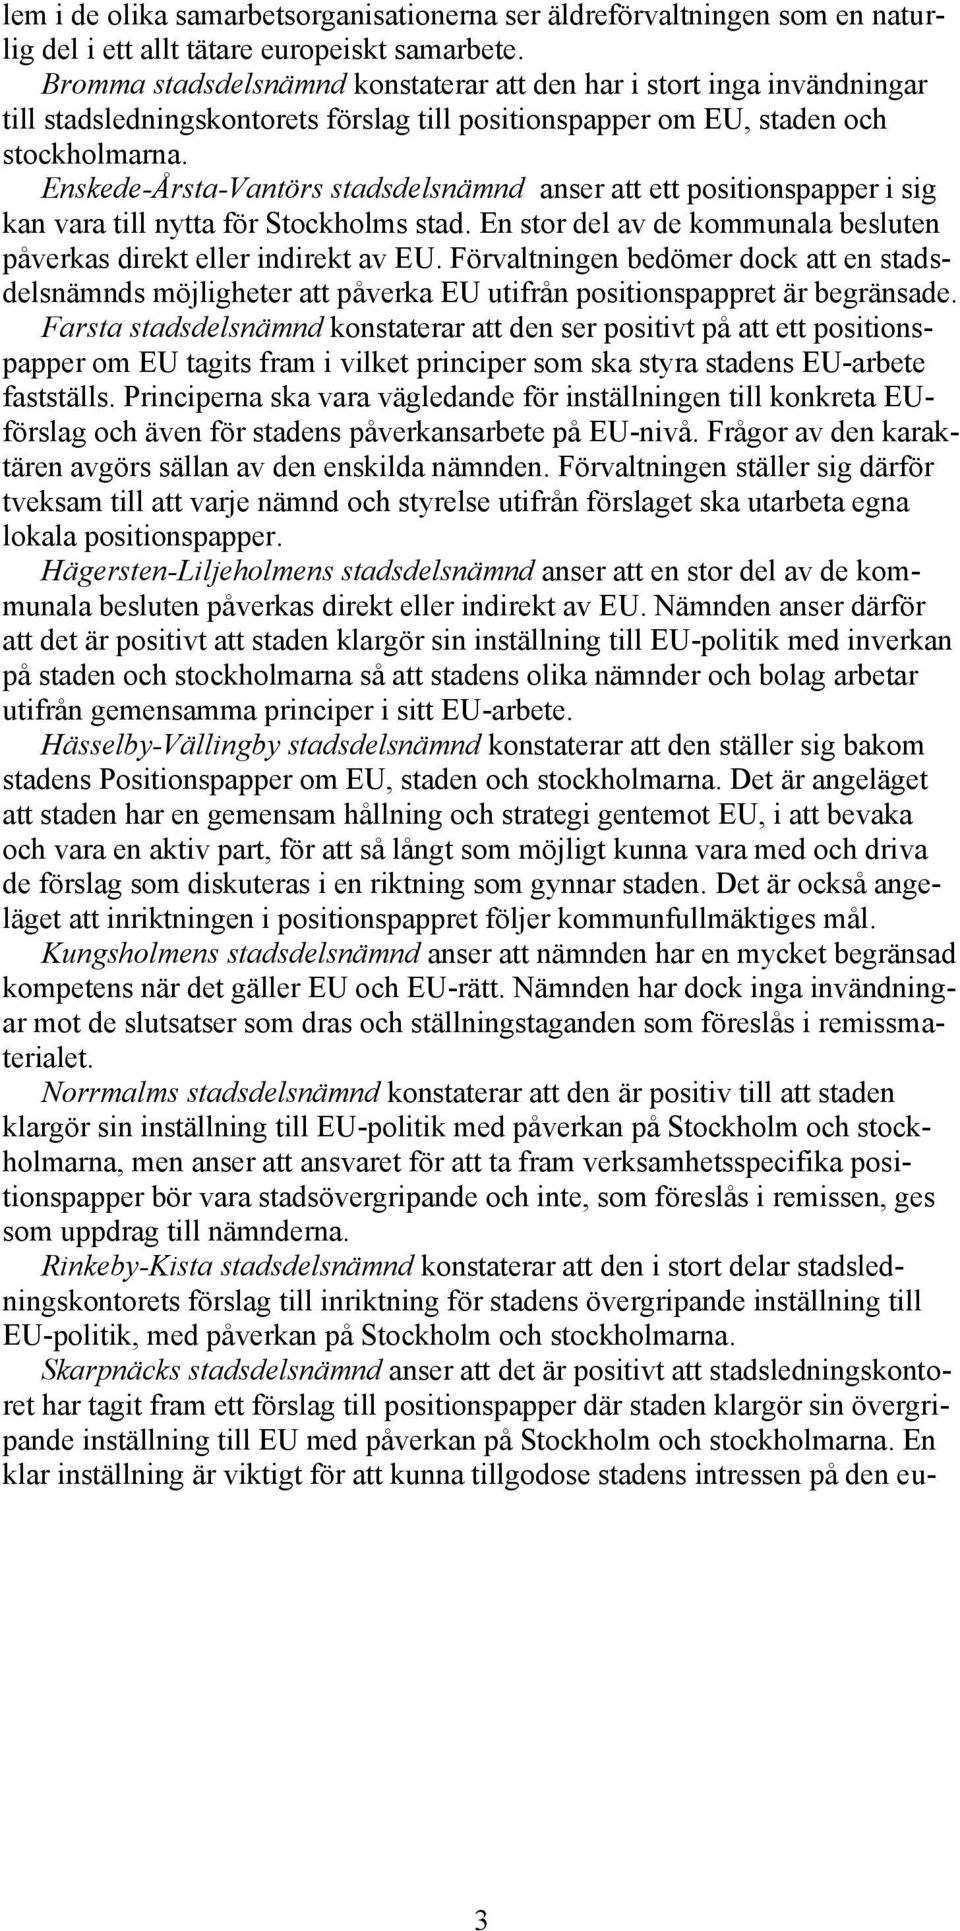 Enskede-Årsta-Vantörs stadsdelsnämnd anser att ett positionspapper i sig kan vara till nytta för Stockholms stad. En stor del av de kommunala besluten påverkas direkt eller indirekt av EU.